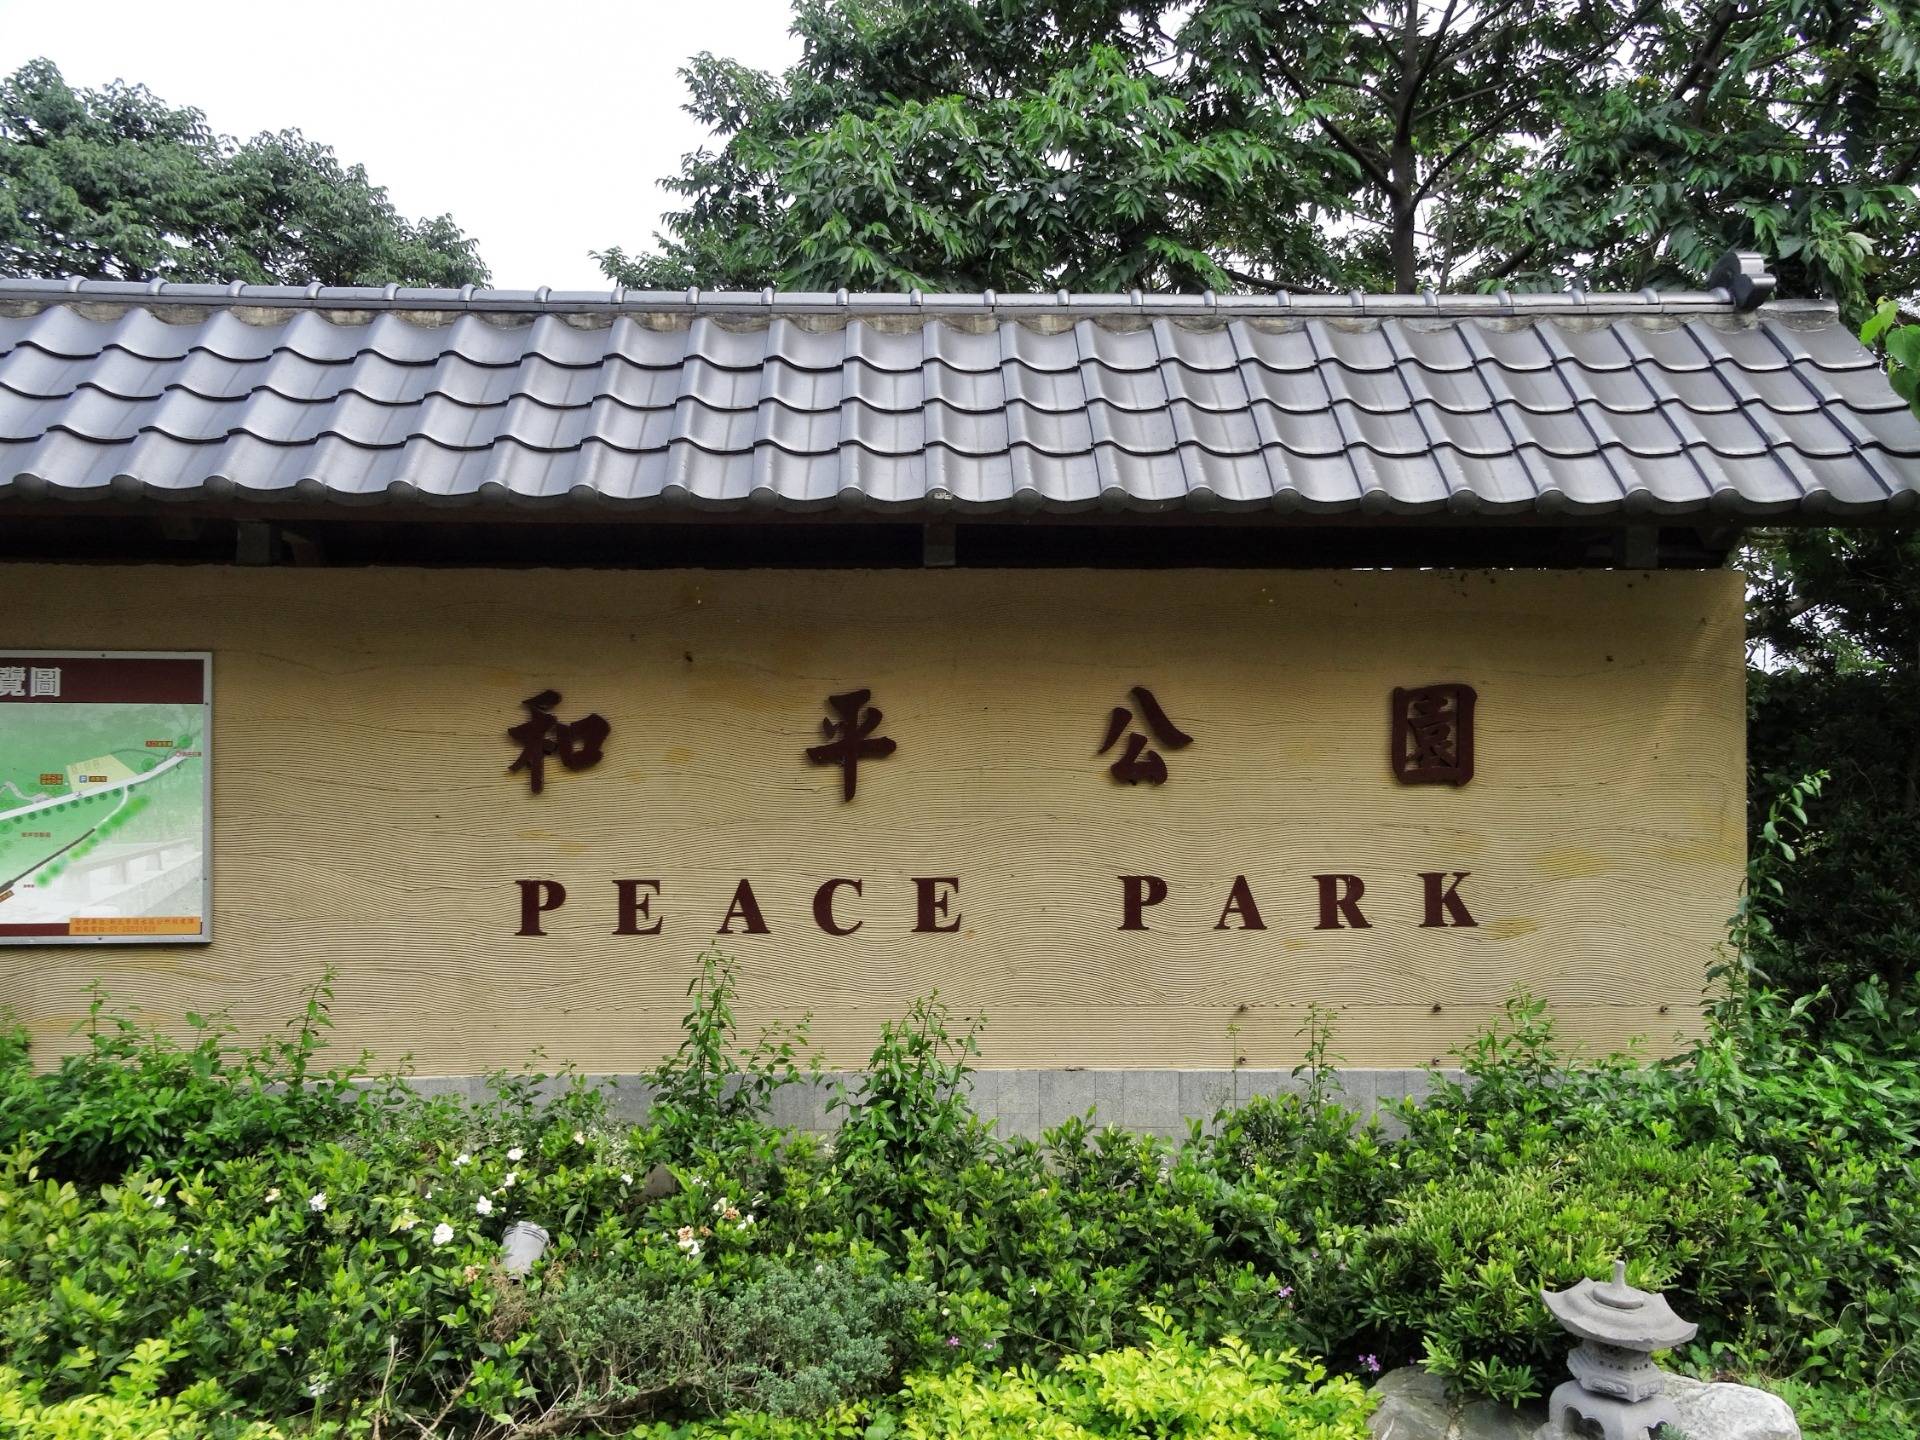 The Peace Park